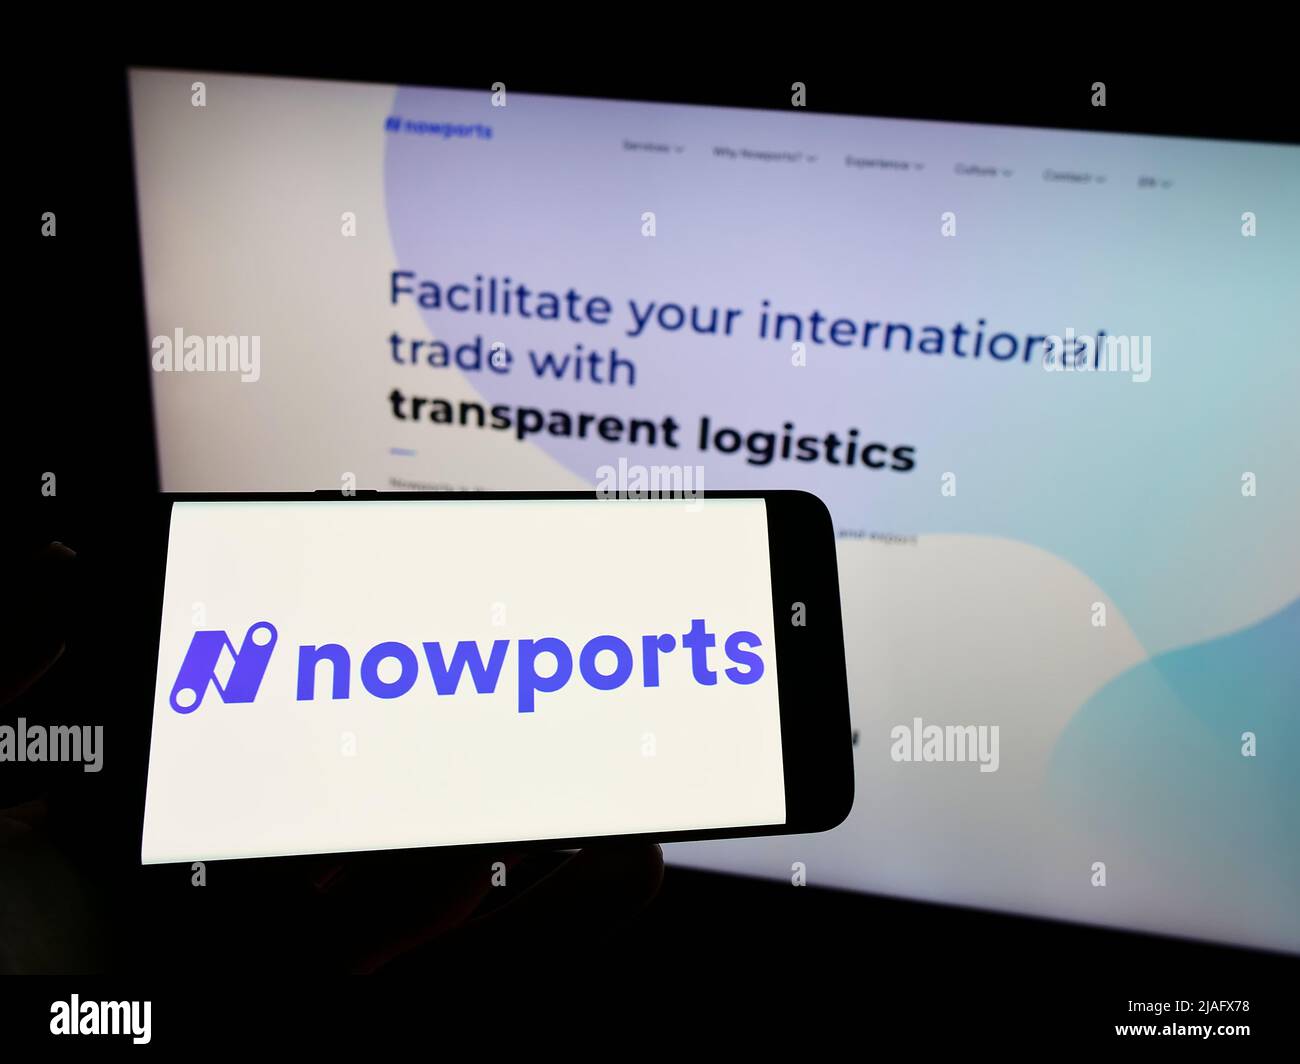 Persona che detiene il telefono cellulare con il logo della società di logistica Nowports Mexico SA de CV sullo schermo di fronte alla pagina web. Mettere a fuoco sul display del telefono. Foto Stock